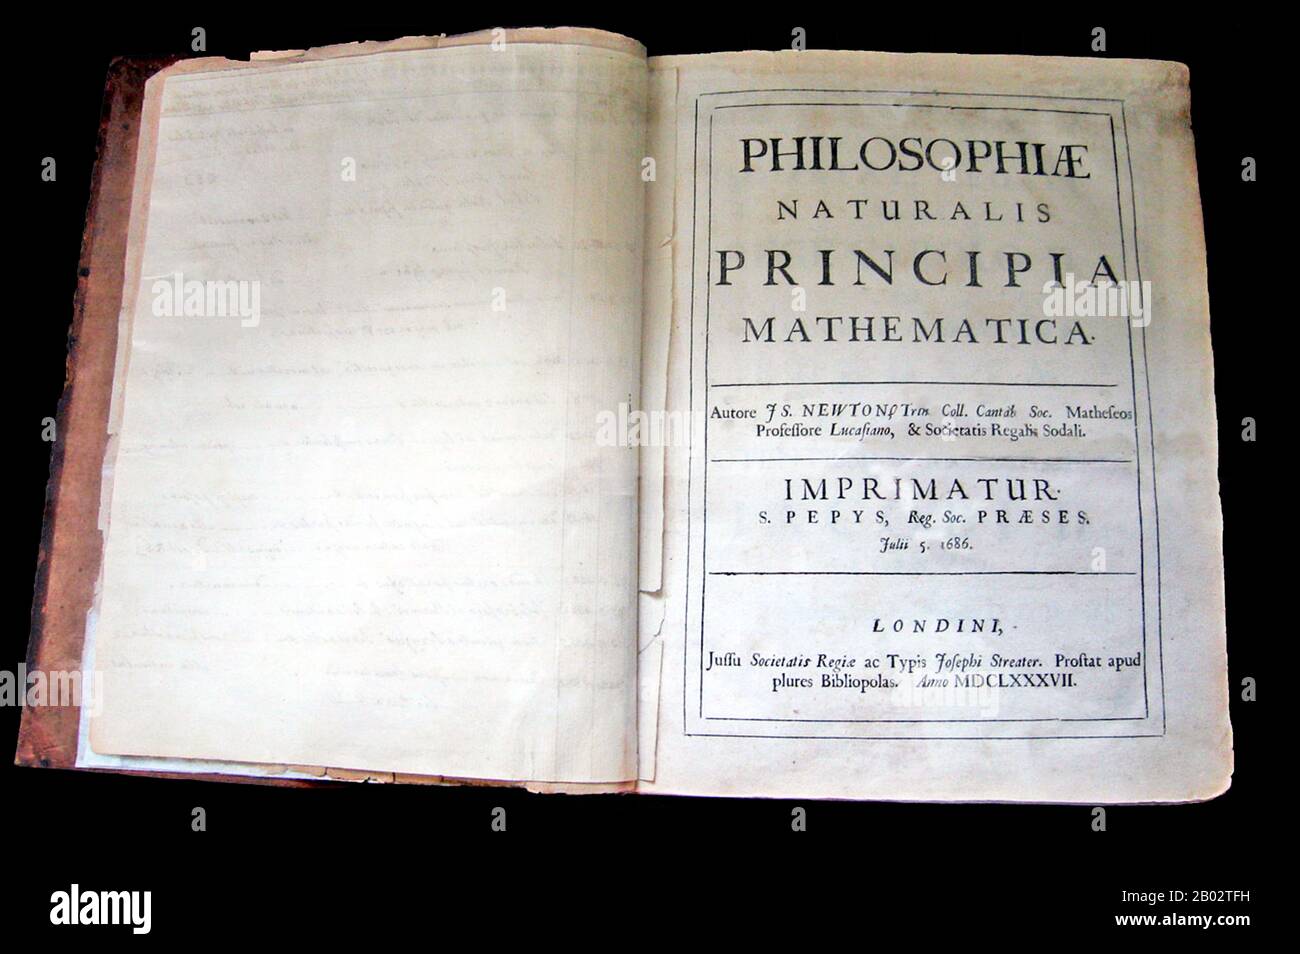 Philosophiae Naturalis Principia Mathematica, lat. Für 'Mathematische Prinzipien der Naturphilosophie', oft auch nur als Principia bezeichnet, ist ein Werk in drei Büchern von Sir Isaac Newton in lateinischer Sprache, das erstmals am 5. Juli 1687 veröffentlicht wurde. Nachdem er seine persönliche Kopie der ersten Ausgabe kommentiert und korrigiert hatte, veröffentlichte Newton auch zwei weitere Ausgaben, 1713 und 1726. Die Principia gibt Newtons Bewegungsgesetze an, bilden die Grundlage der klassischen Mechanik, auch Newtons Gesetz der universellen Gravitation und eine Ableitung von Keplers Gesetzen der Planetenbewegung (die Kepler erstmals empirisch erhielt). Stockfoto